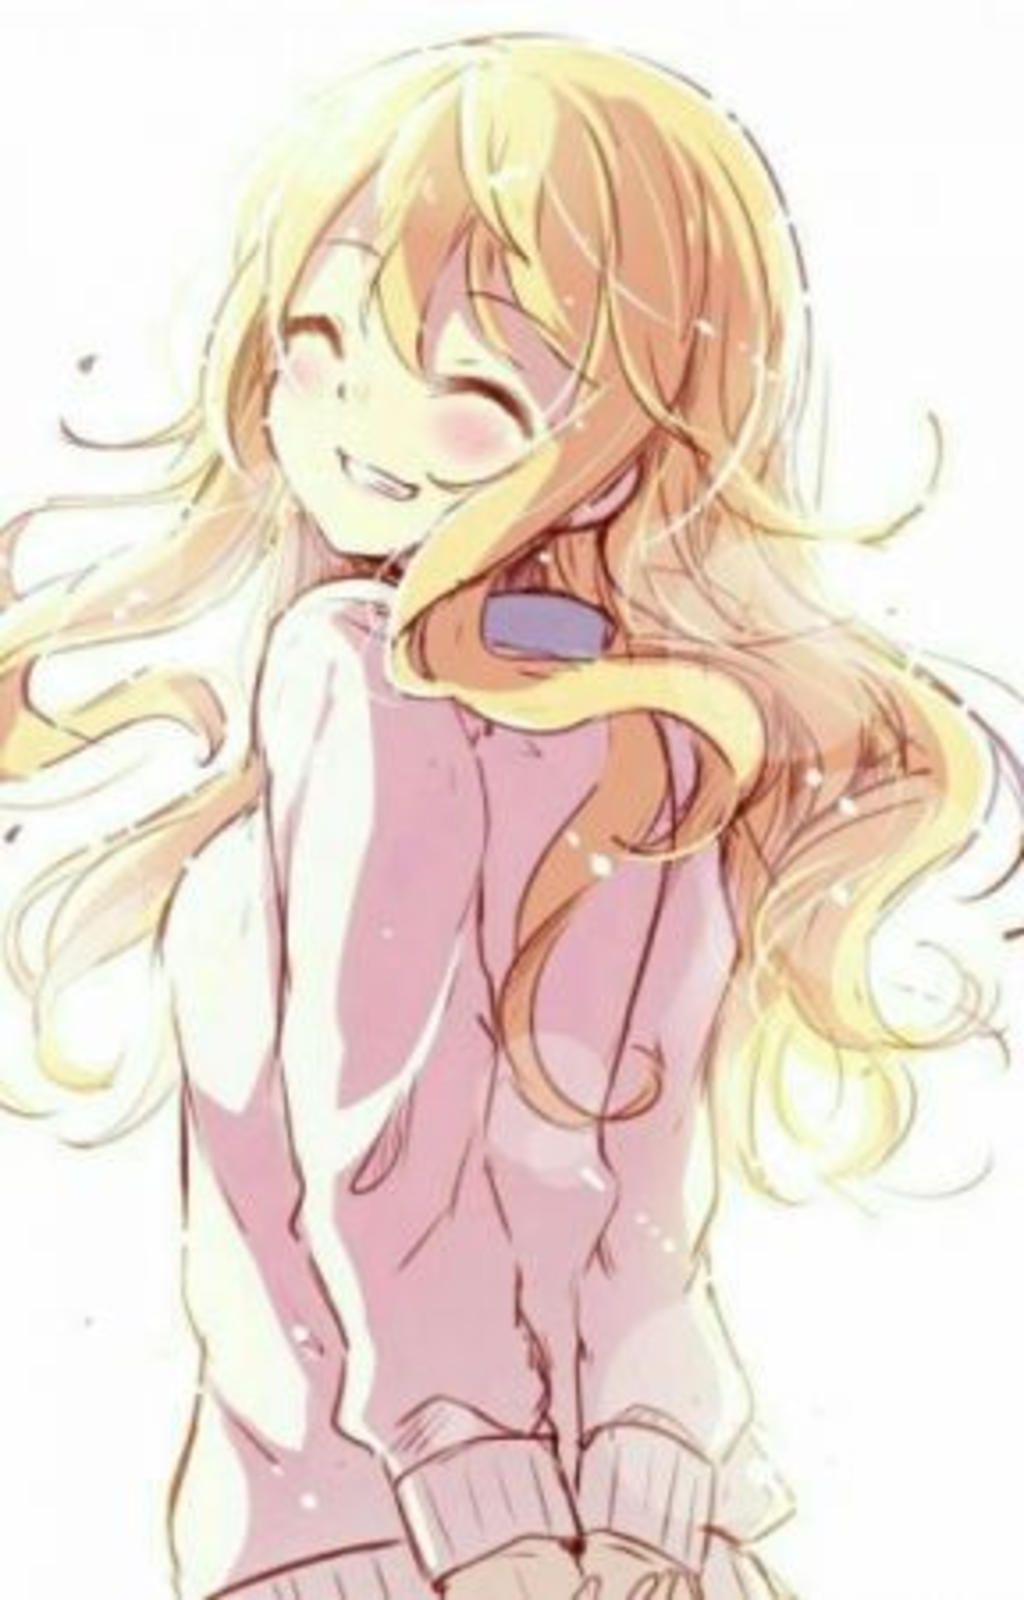 Cười lên với những hình vẽ anime nữ đáng yêu và tươi cười. Chúng sẽ đem lại cho bạn cảm giác thoải mái và giải tỏa căng thẳng trong cuộc sống.